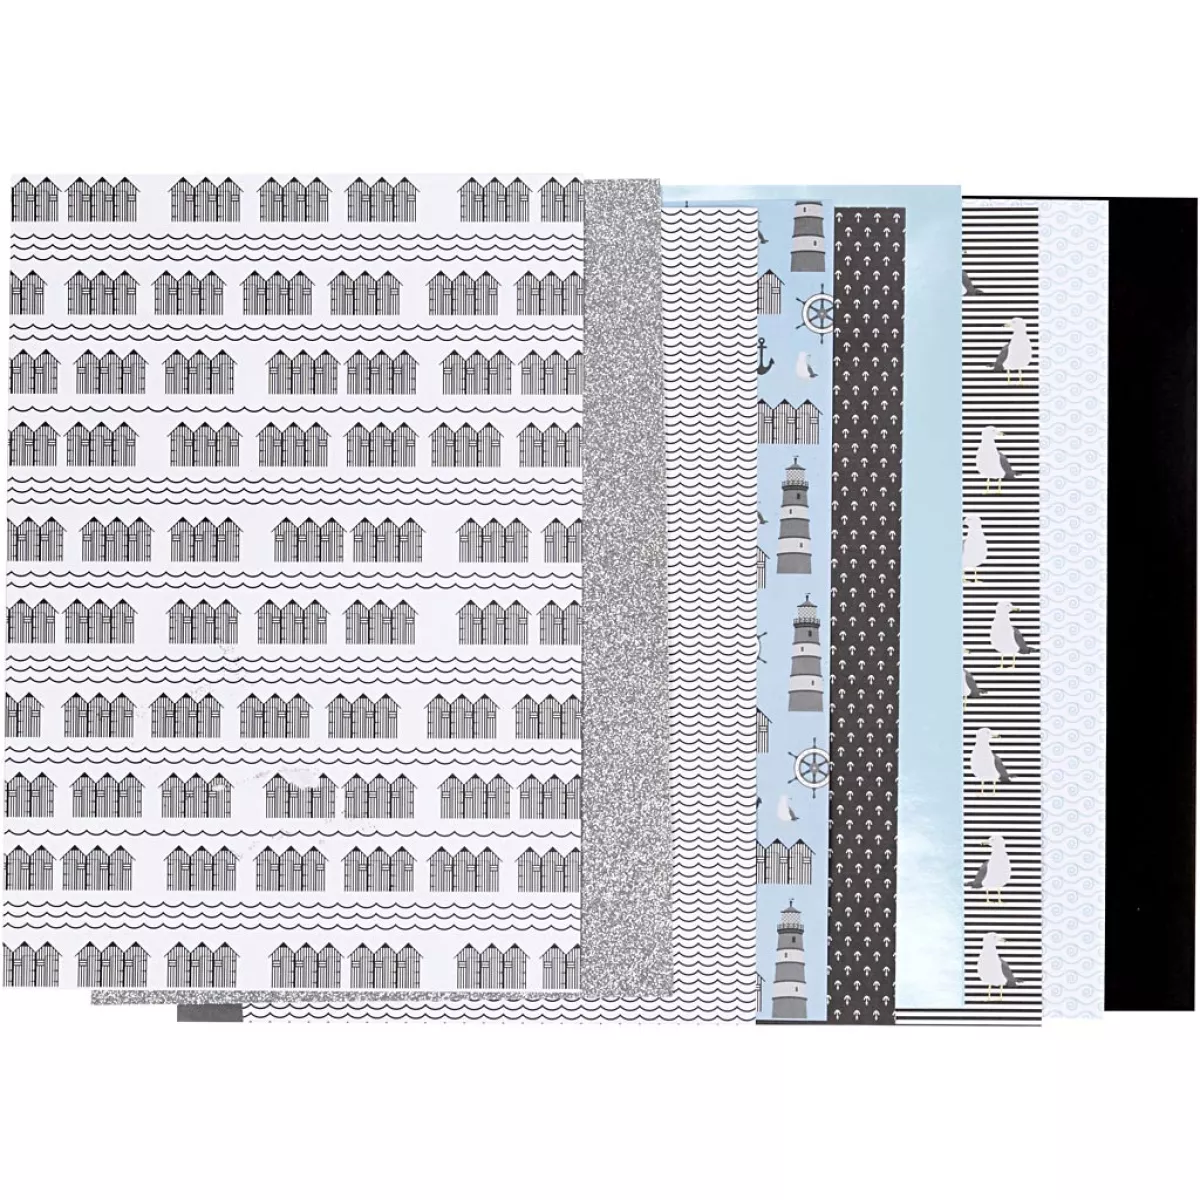 #2 - Designpapir i blok, str. 21x30 cm, 120+128 g, sort, blå, grå, hvid, 24 ark/ 1 pk.